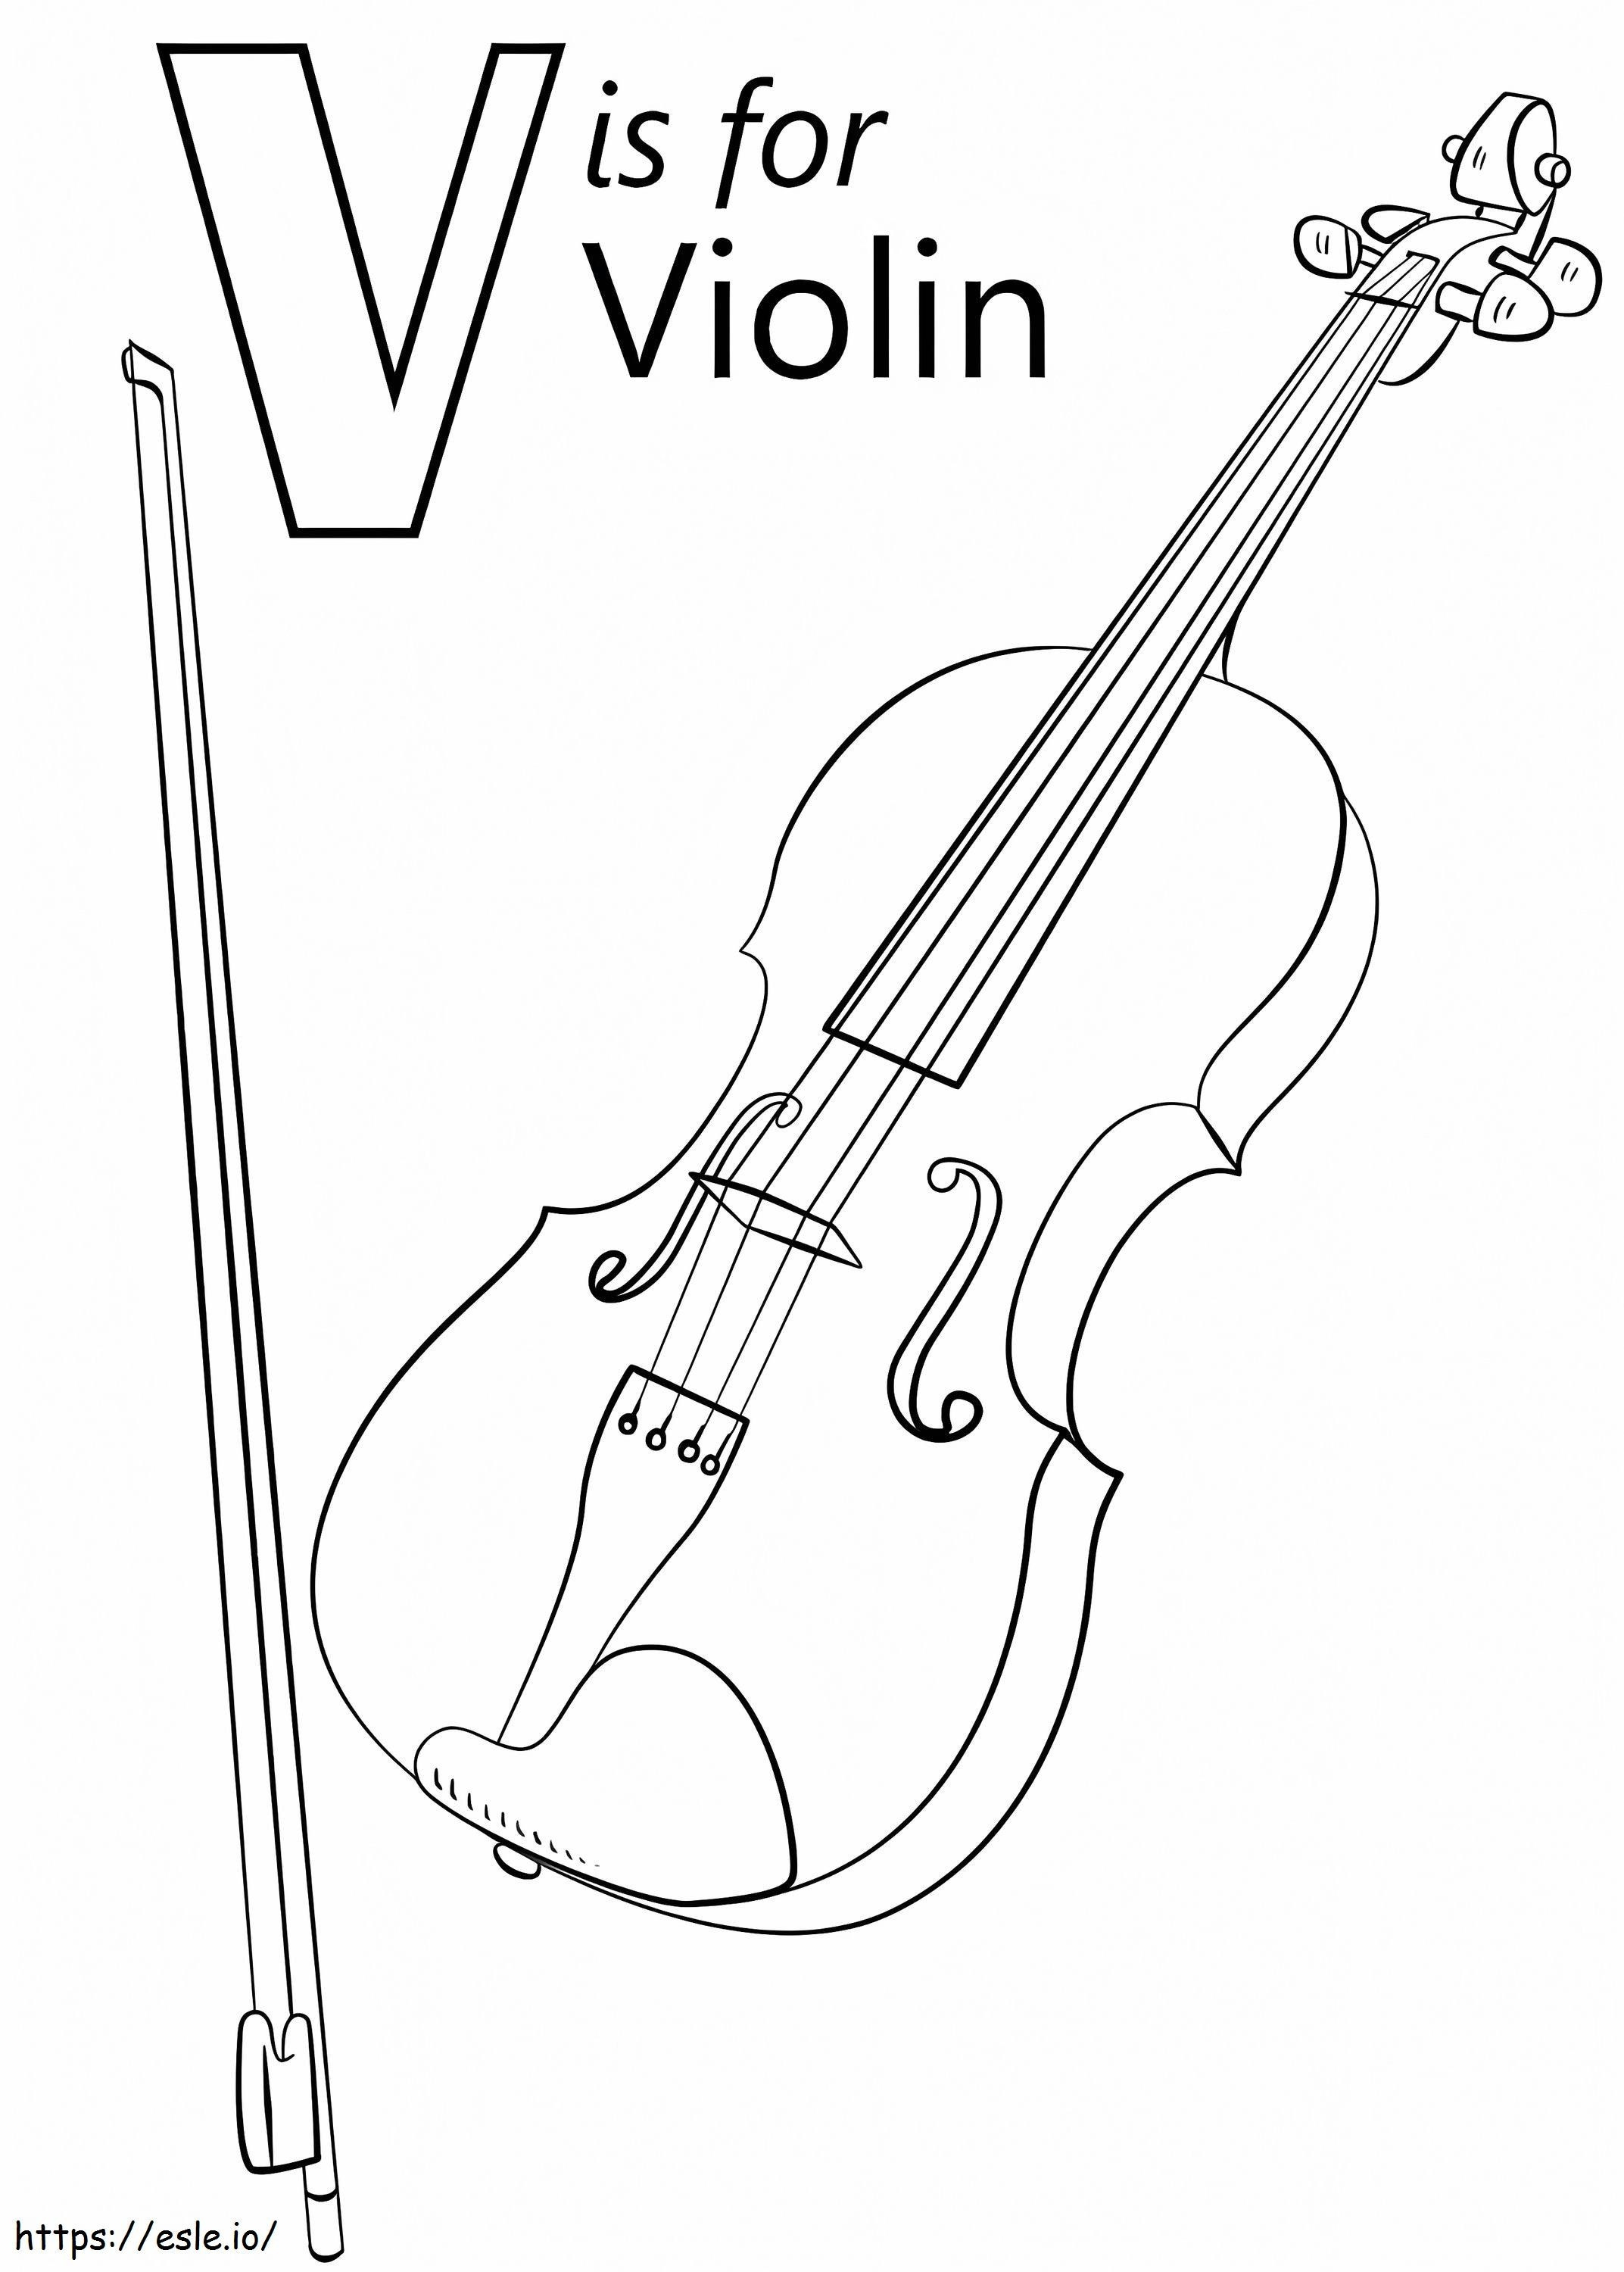 Violinbuchstabe V ausmalbilder